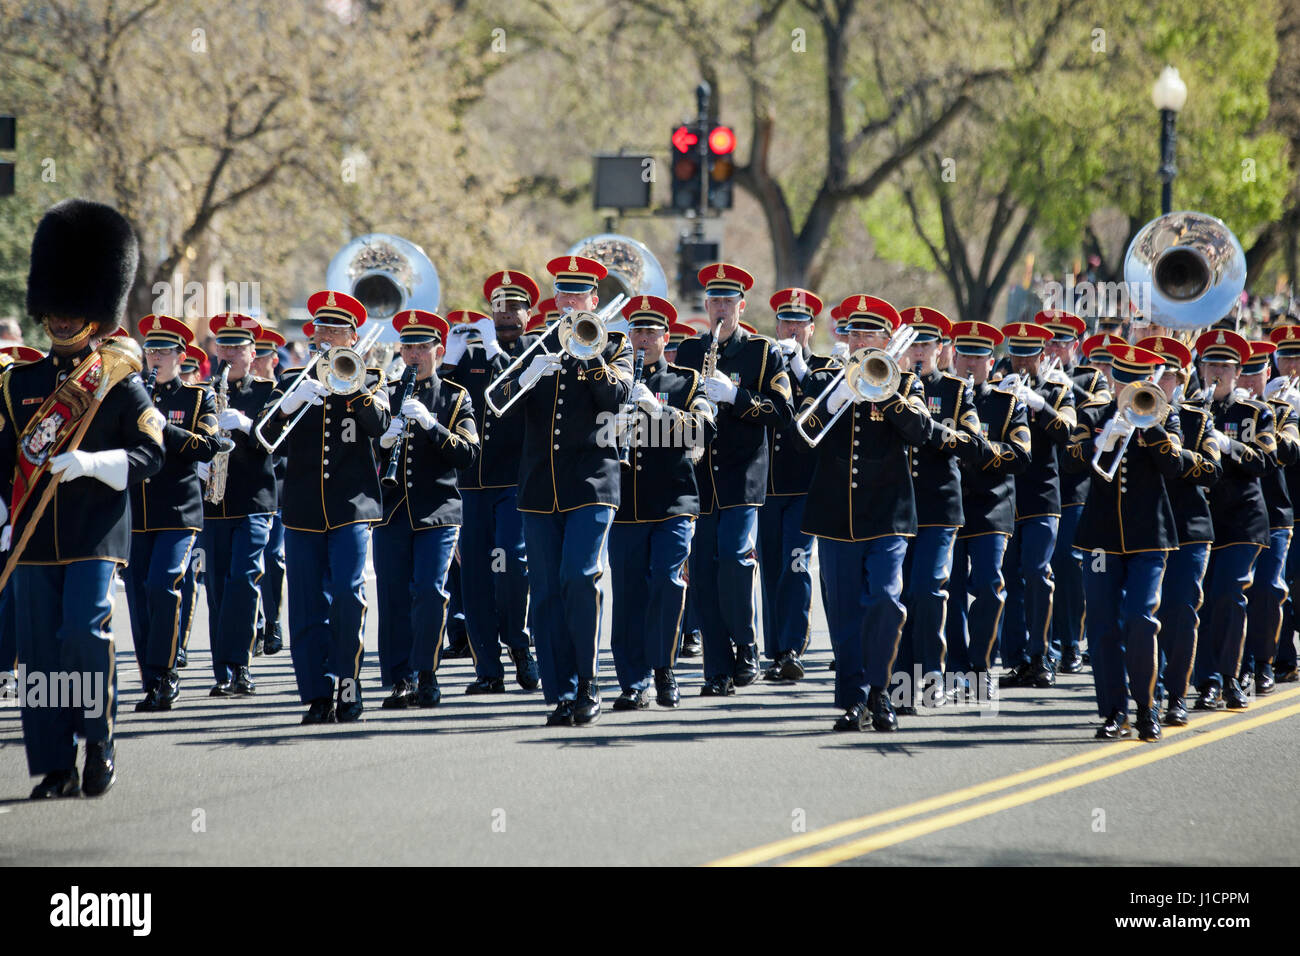 La banda del ejército de los Estados Unidos participaron en un desfile de la calle - Washington, DC, EE.UU. Foto de stock